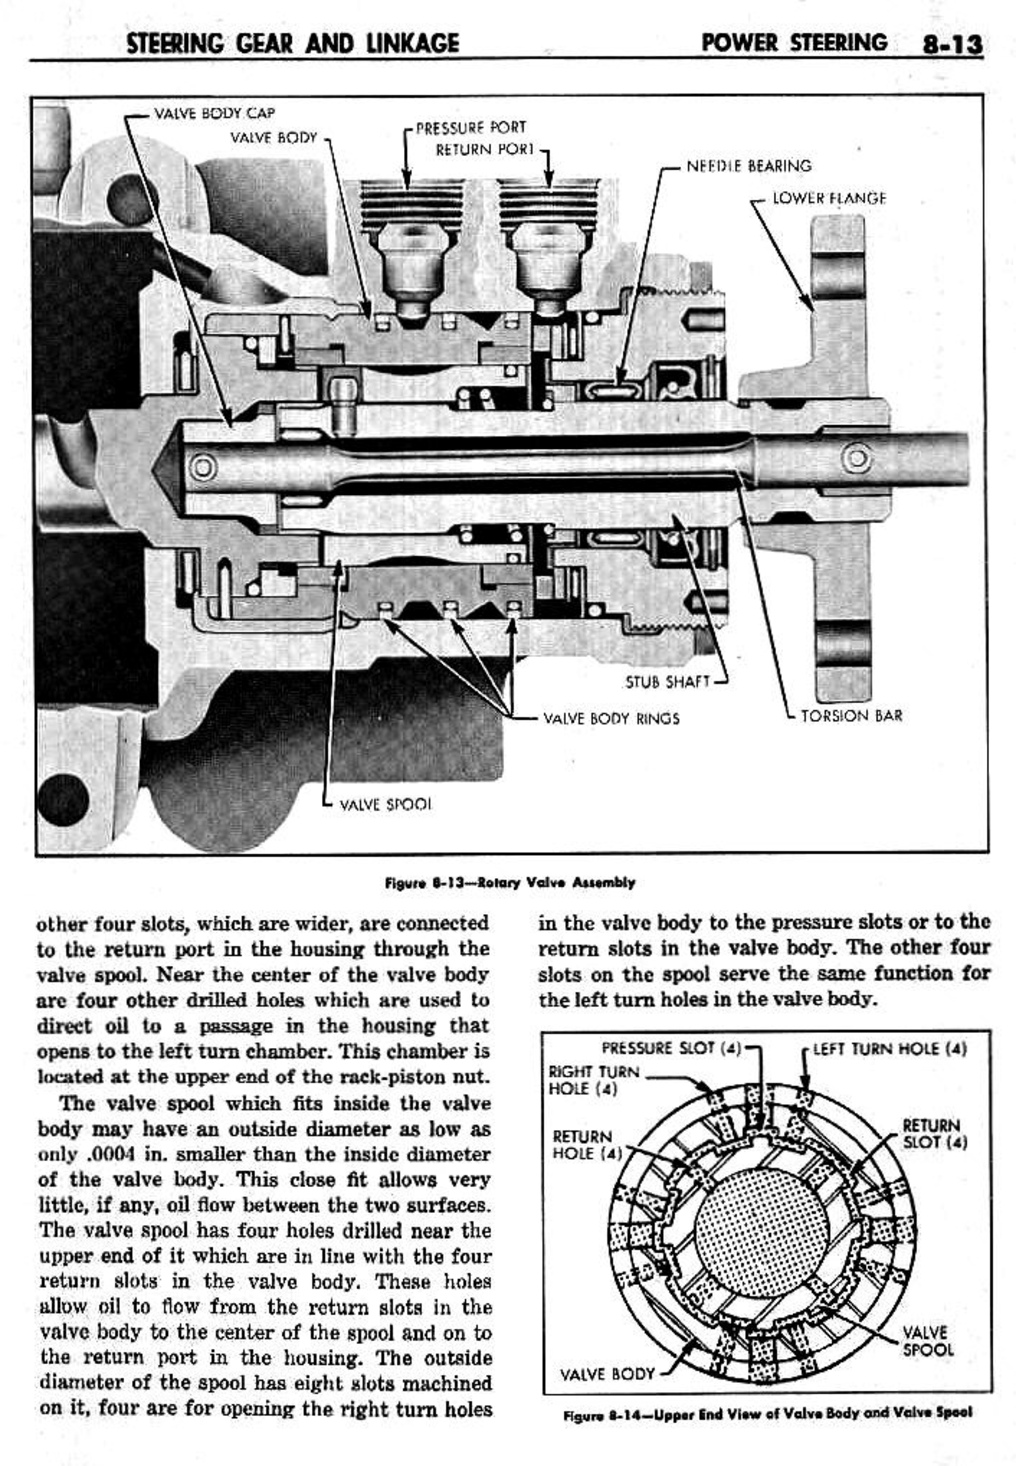 n_09 1959 Buick Shop Manual - Steering-013-013.jpg